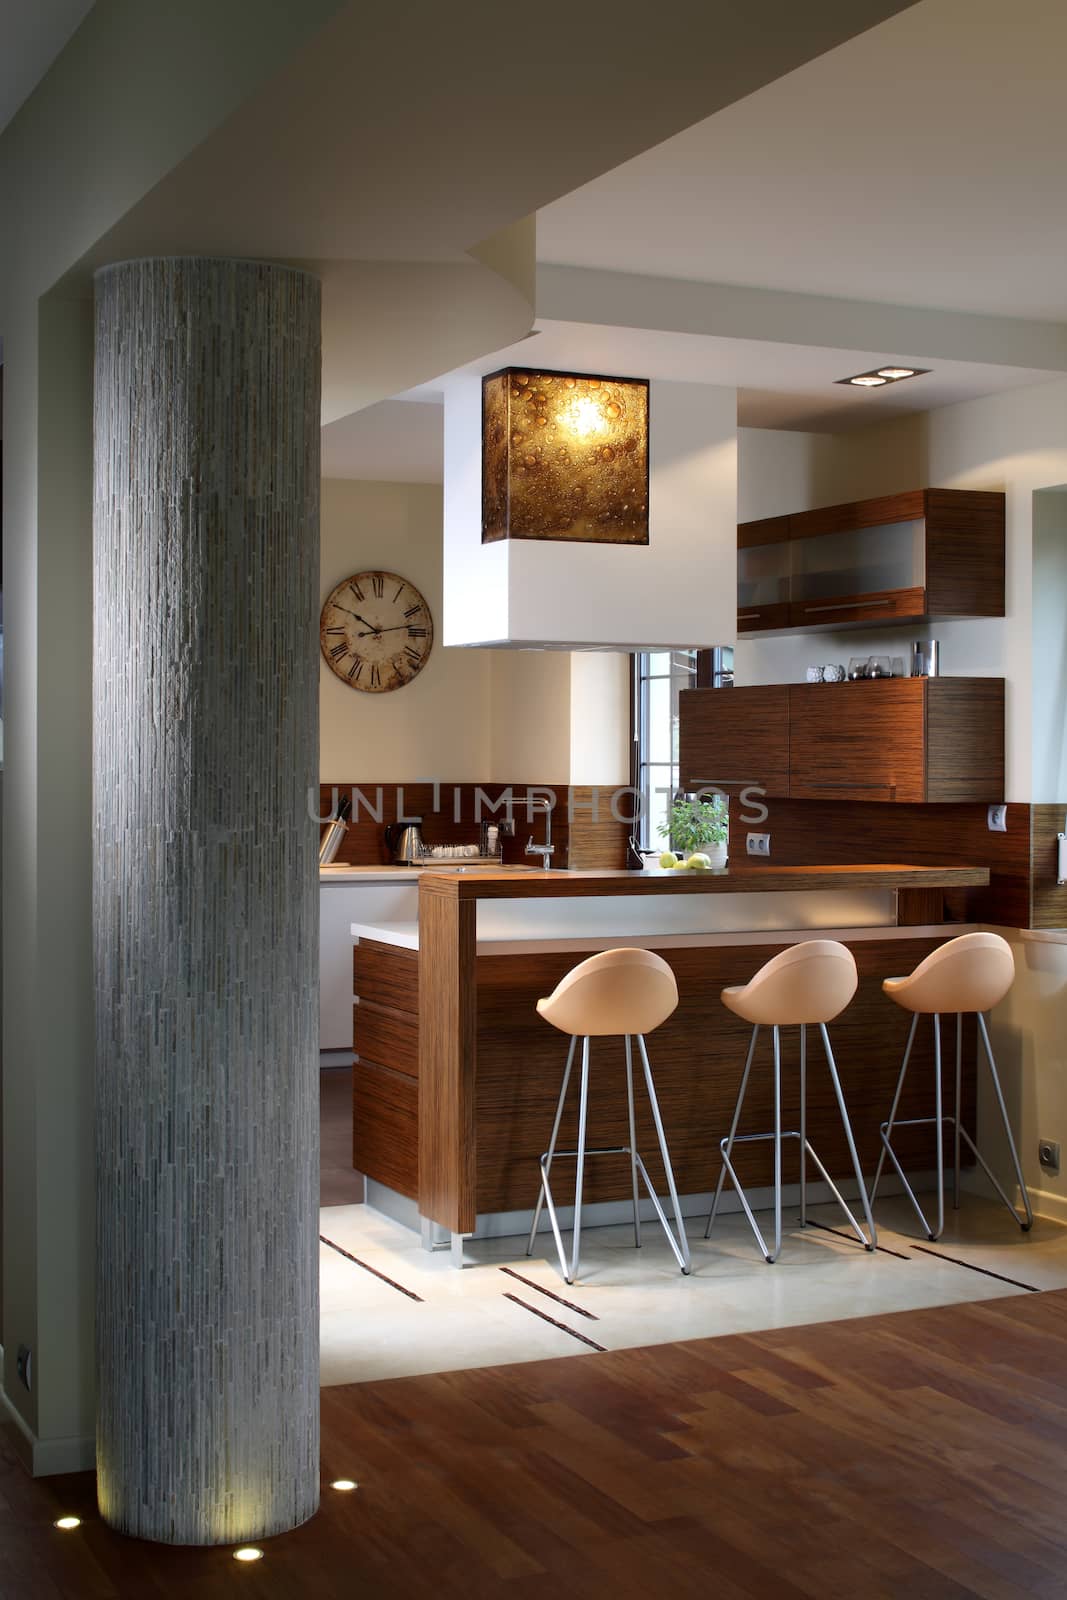 Modern kitchen in luxury apartment